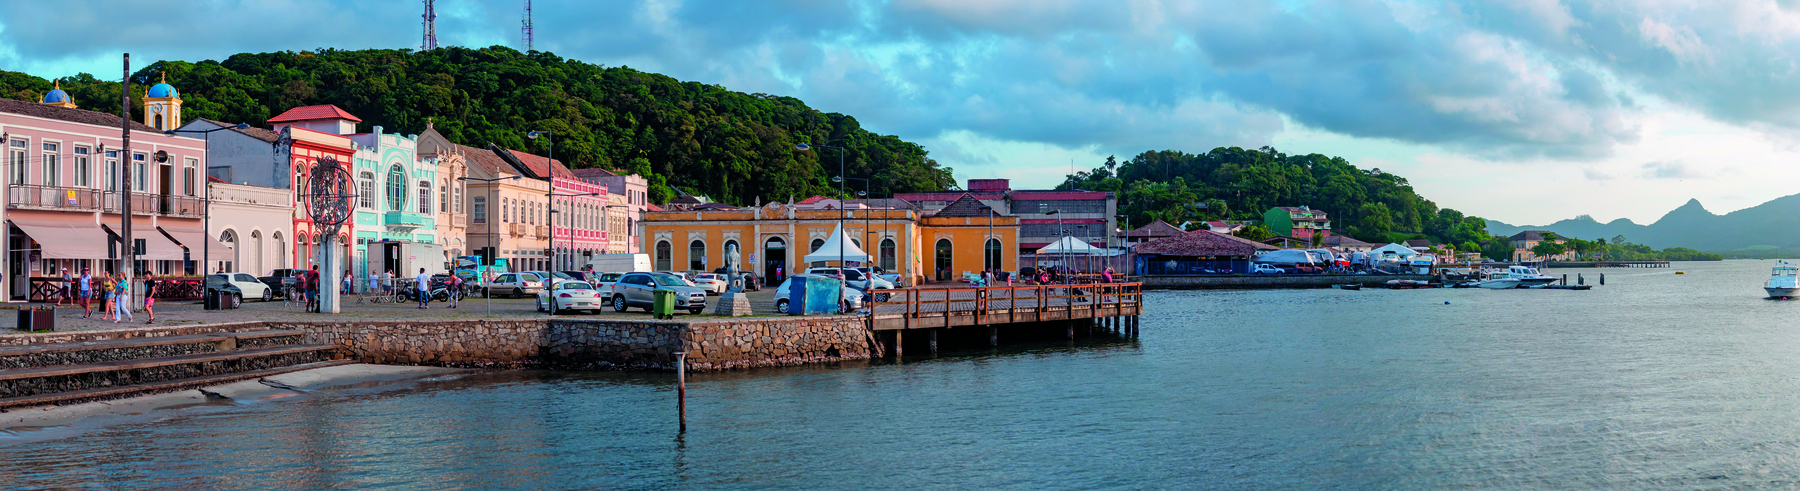 Imagem: Fotografia. À esquerda pequenos prédios coloridos e muita vegetação à beira mar. À direita, o mar. Fim da imagem.